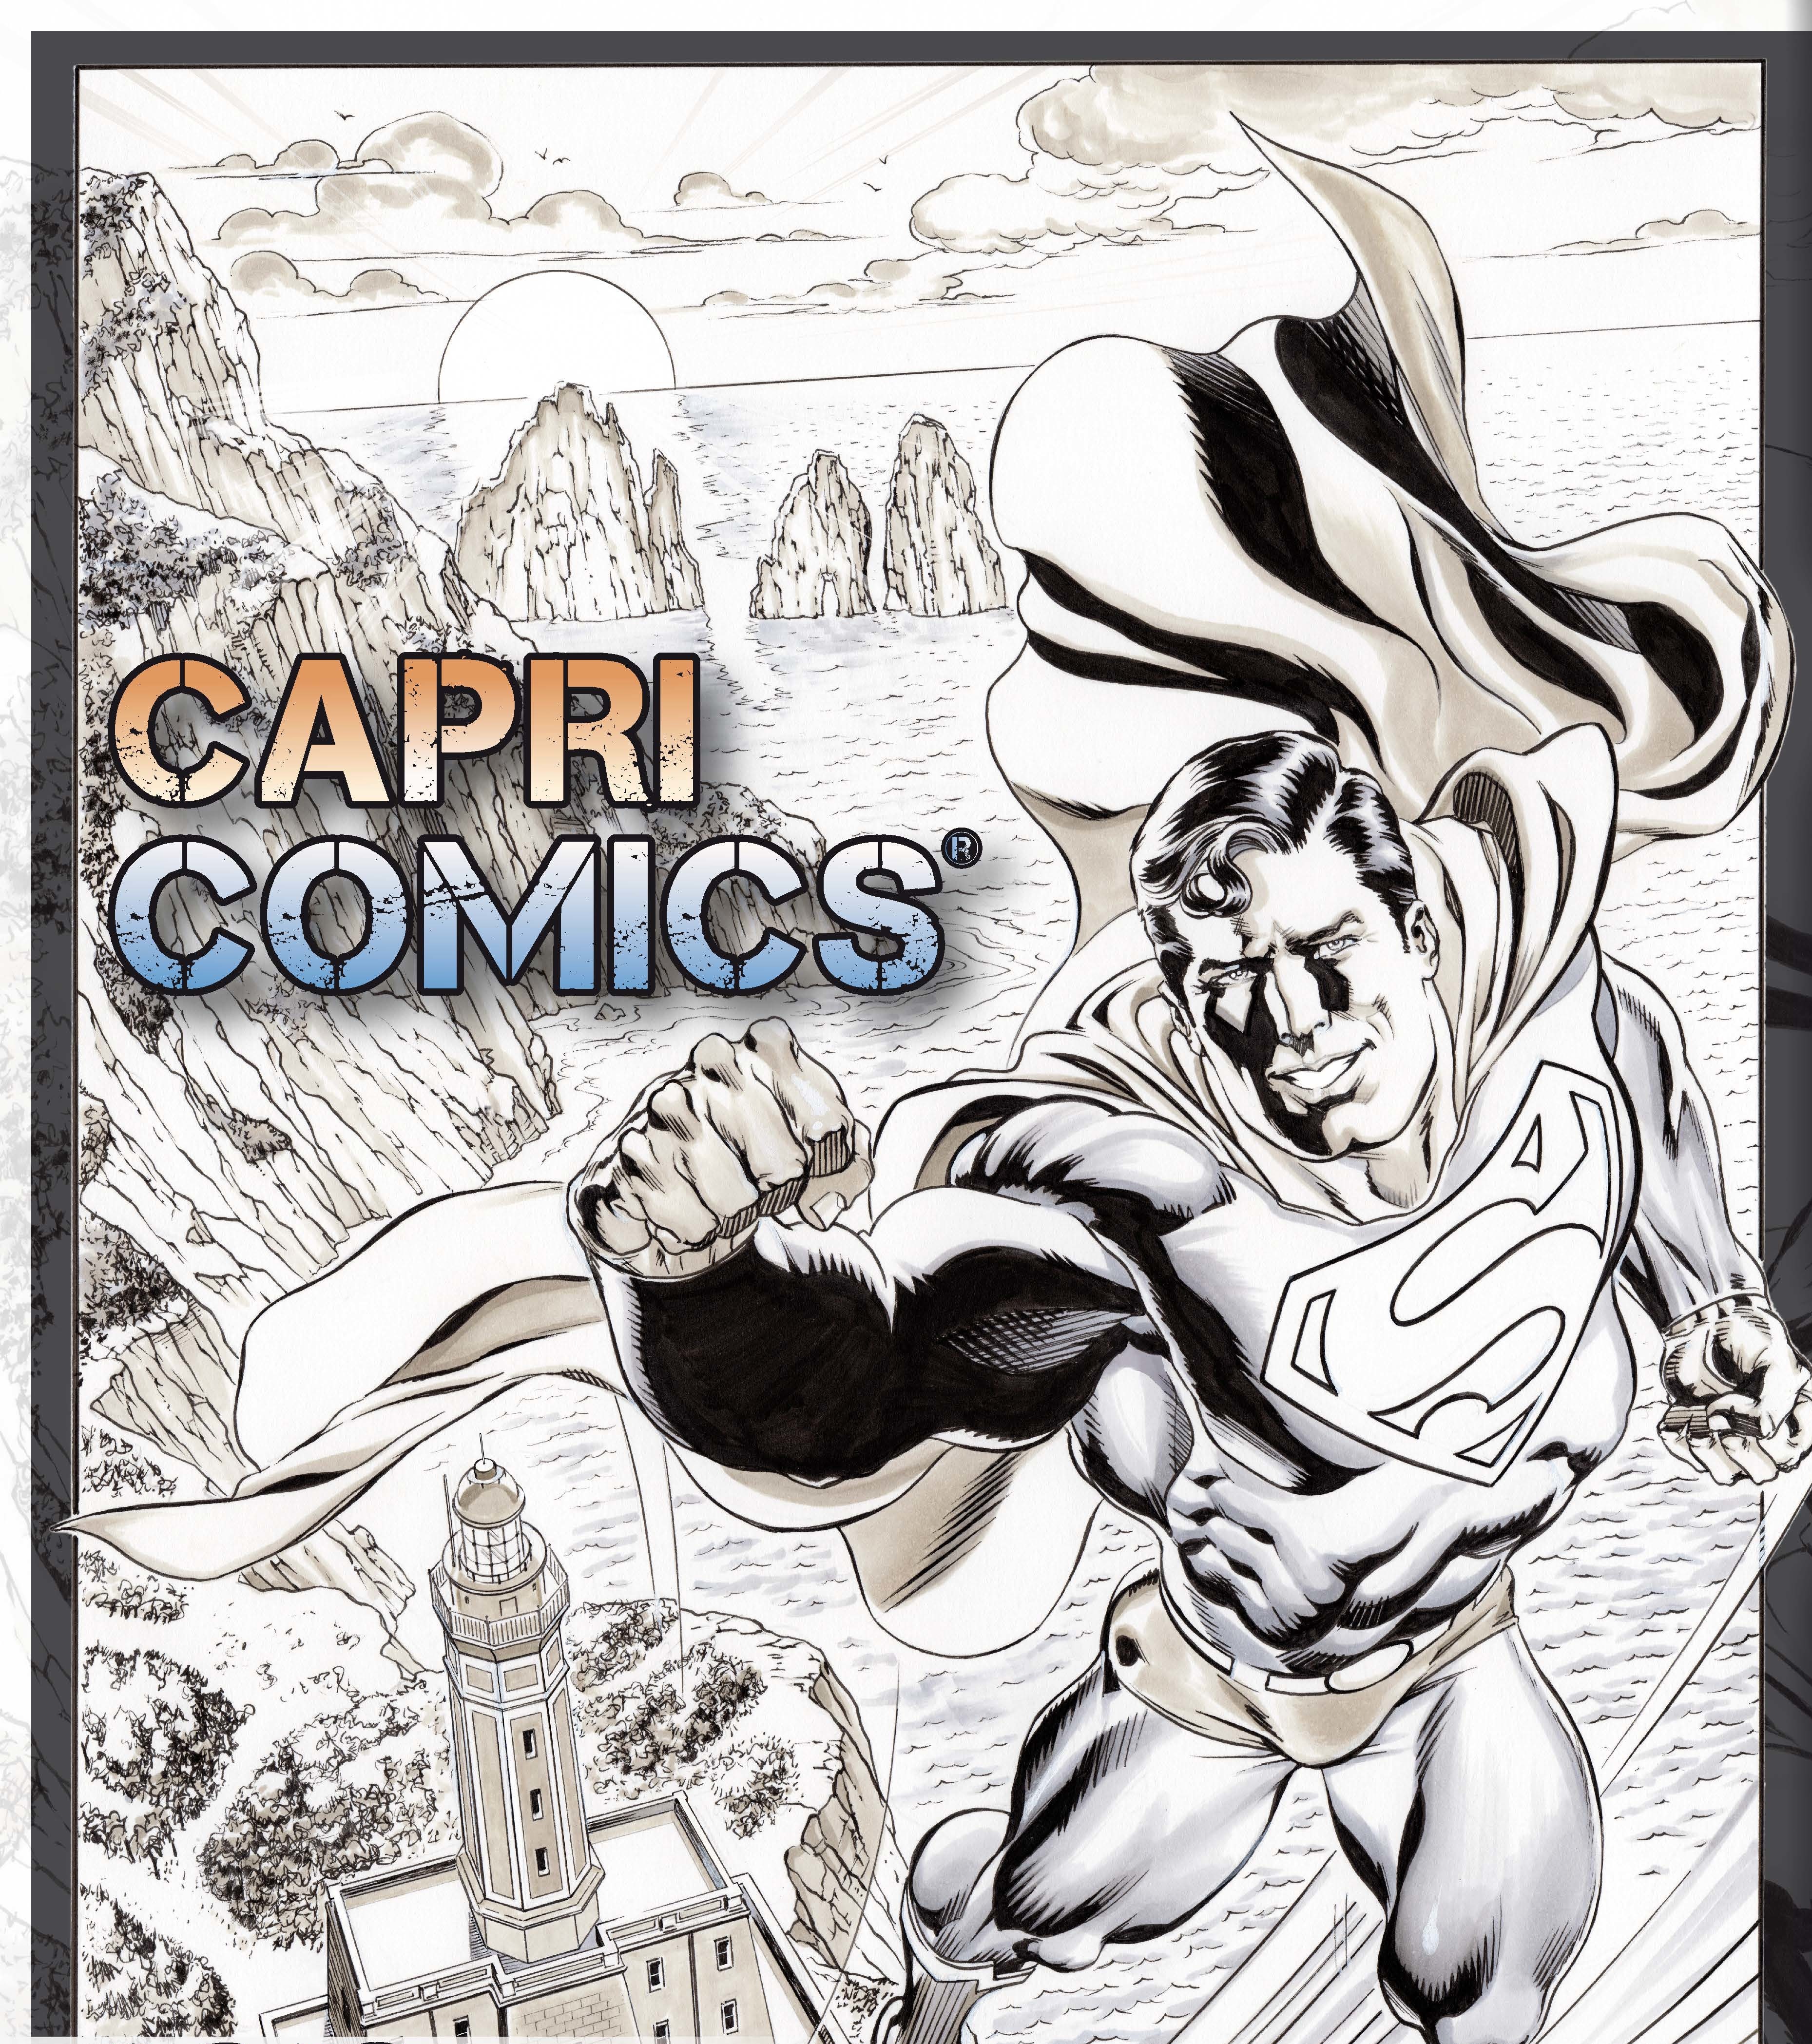 Capri Comics 2019, settima edizione